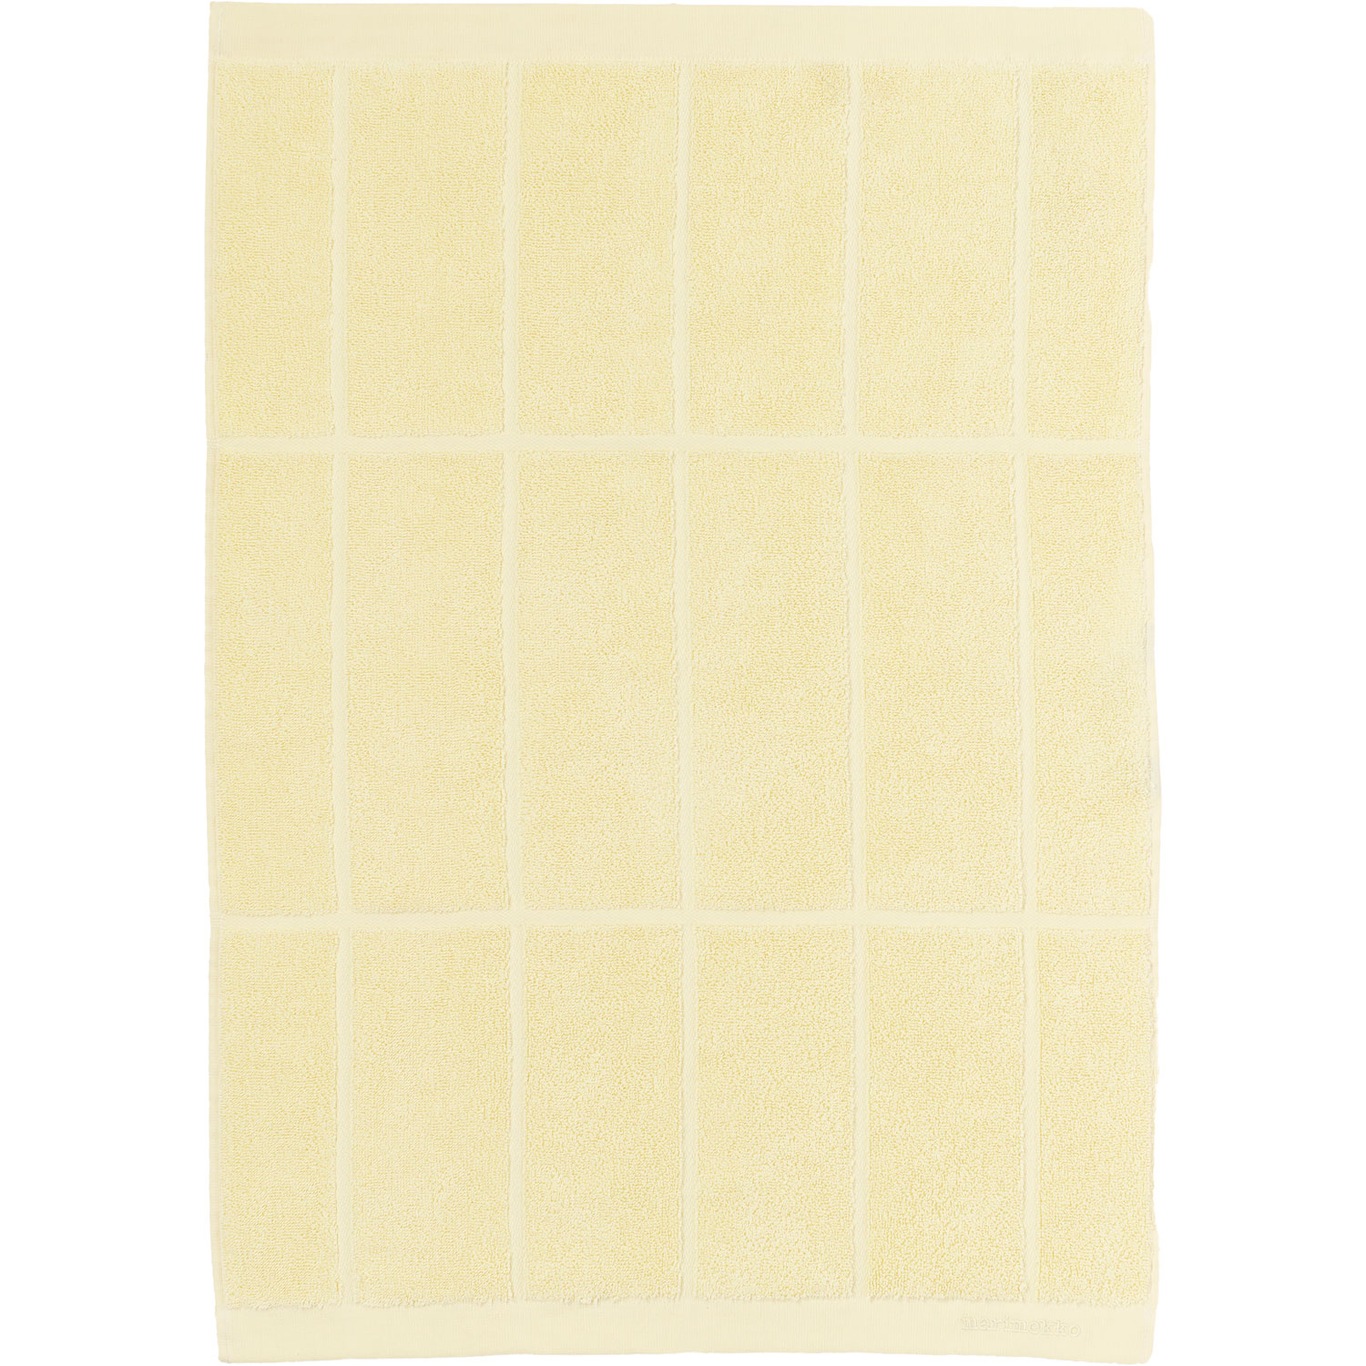 Tiiliskivi Pyyhe 50x70 cm, Butter Yellow